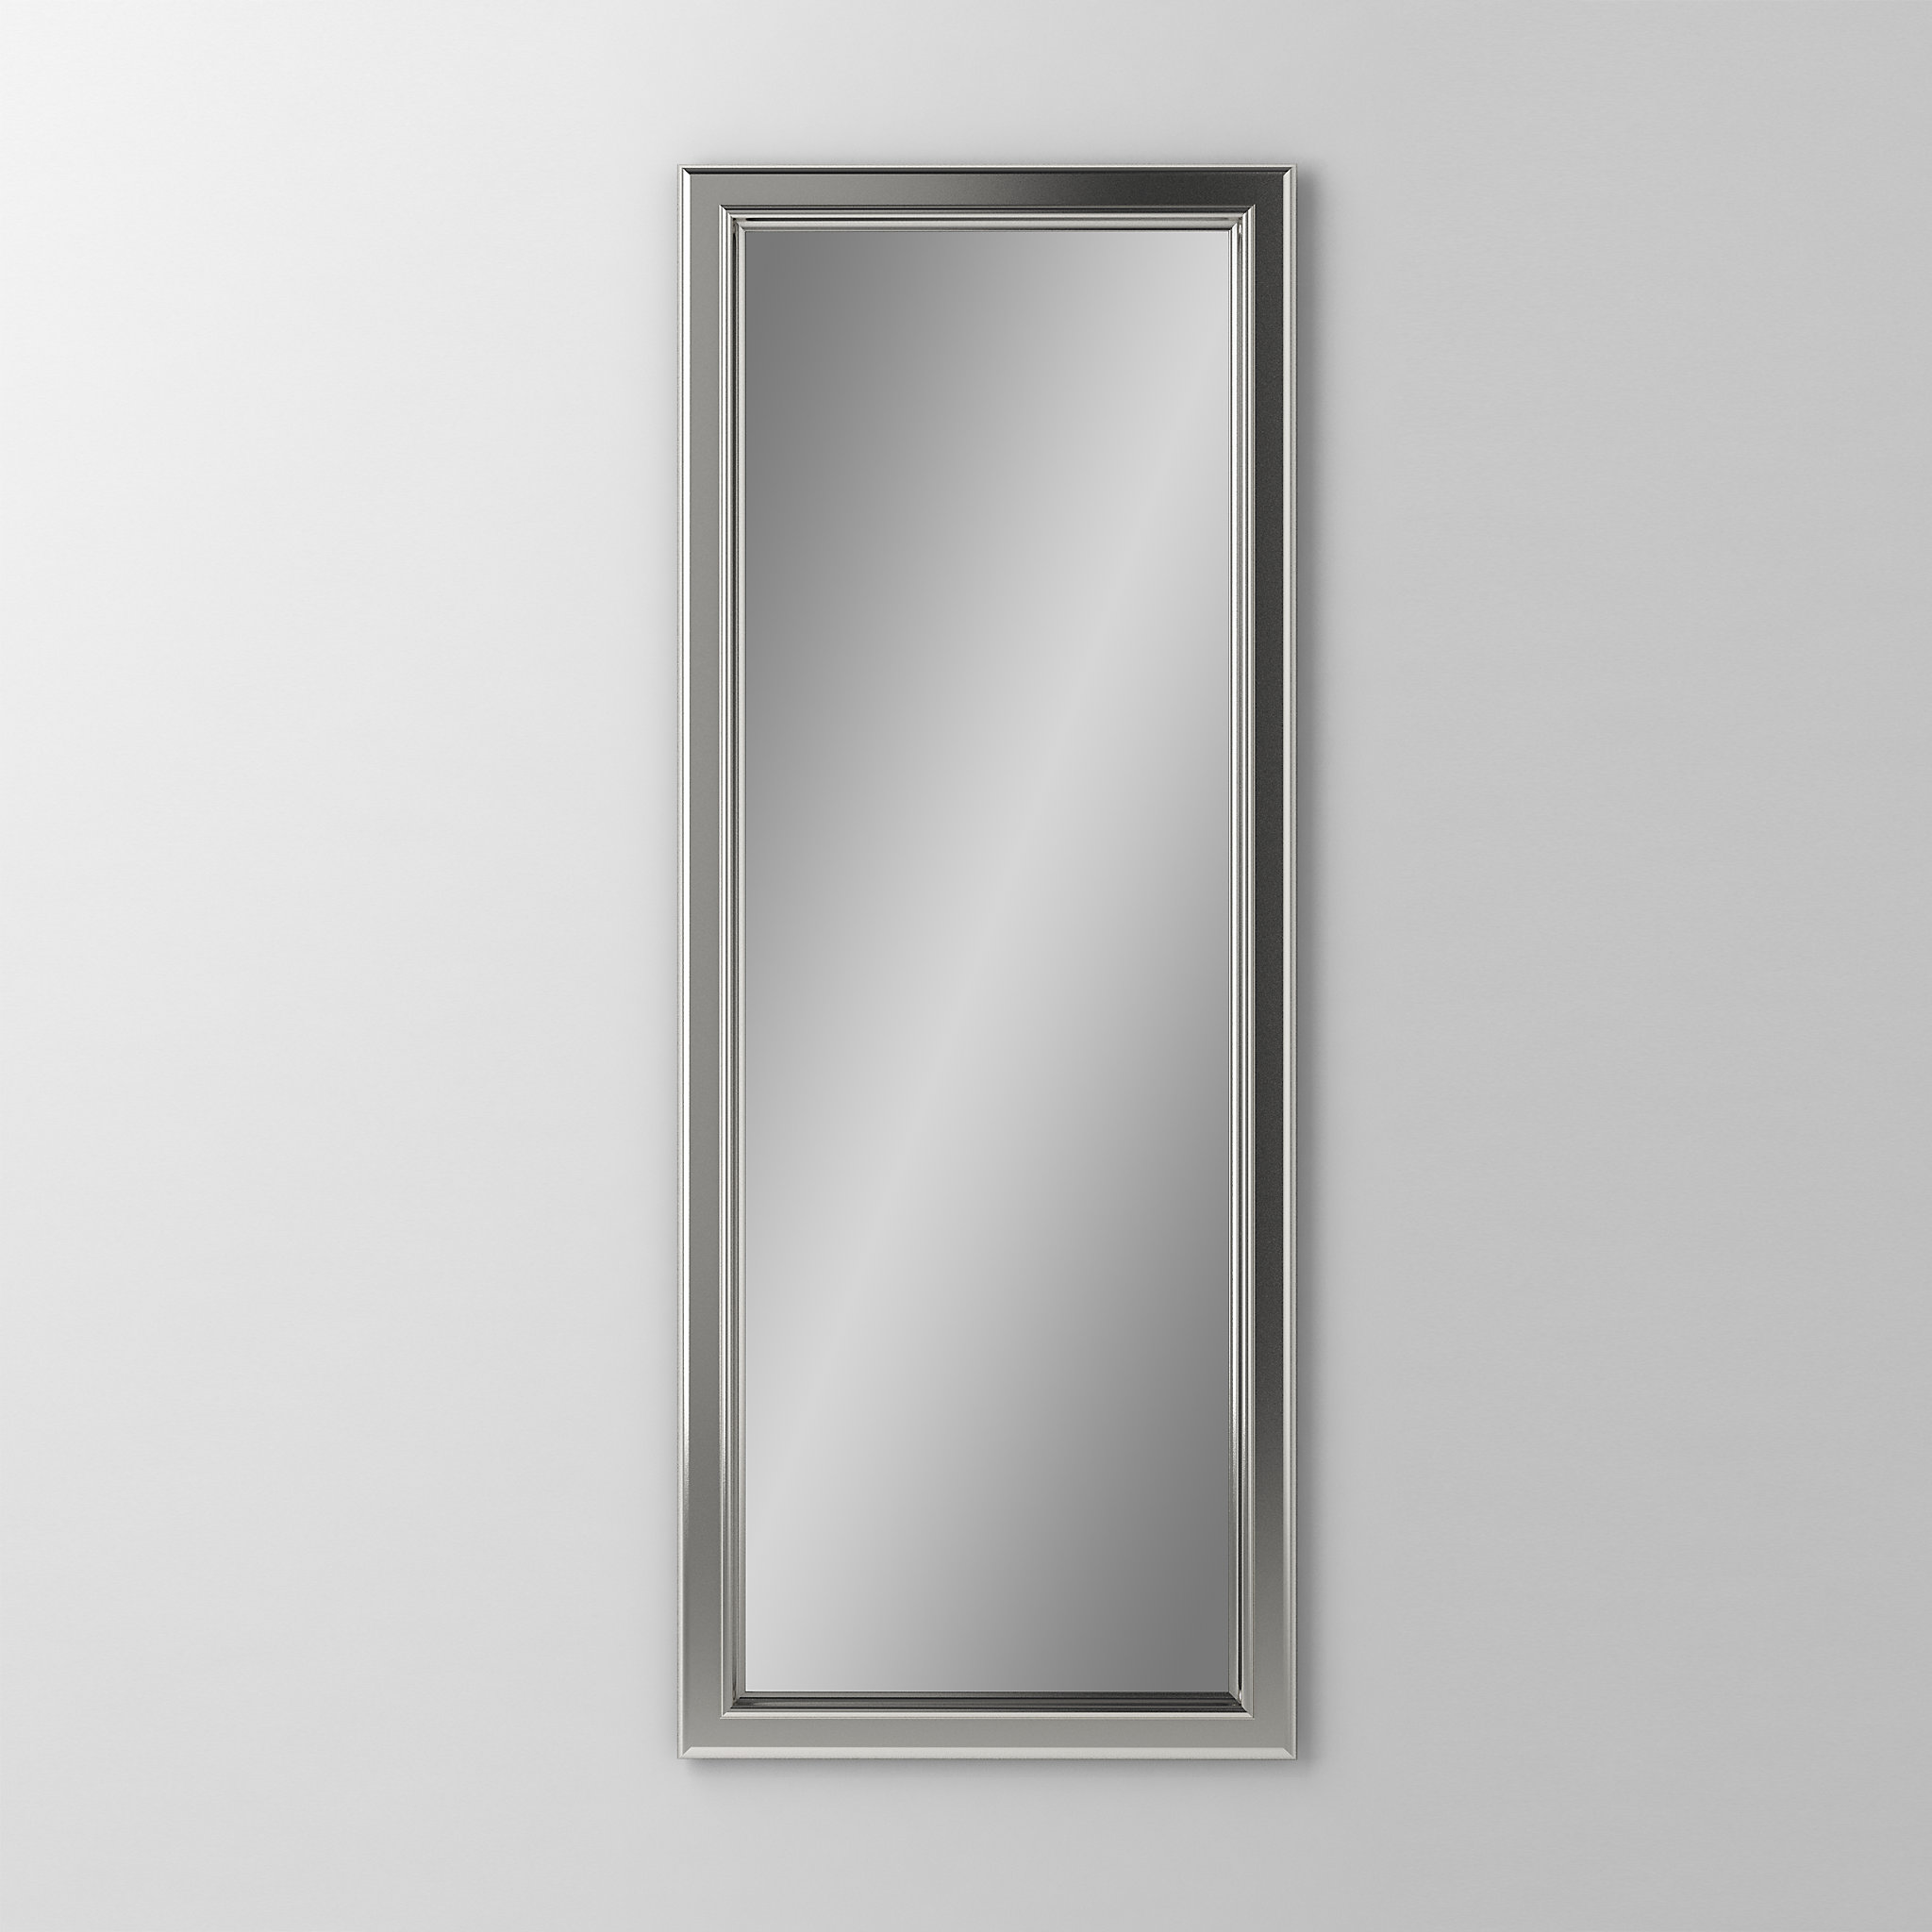 Robern DM1640BM71Main Line Mirror, 16" x 40" x 1-5/8", Bryn Mawr Frame, Brushed Nickel